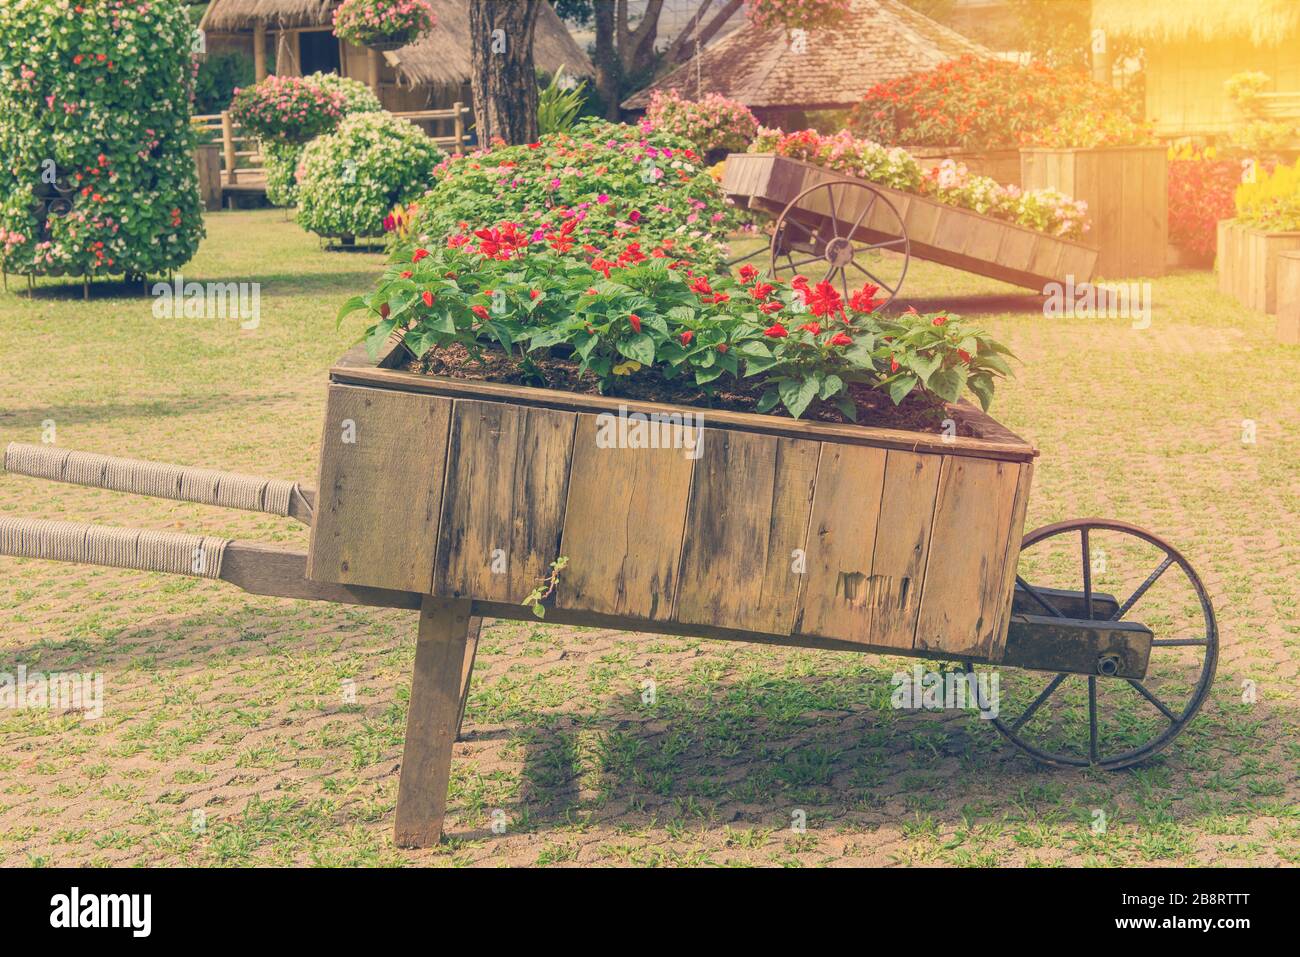 Colorato di fiori di petunia su carrello o carrello in legno in giardino. Foto Stock